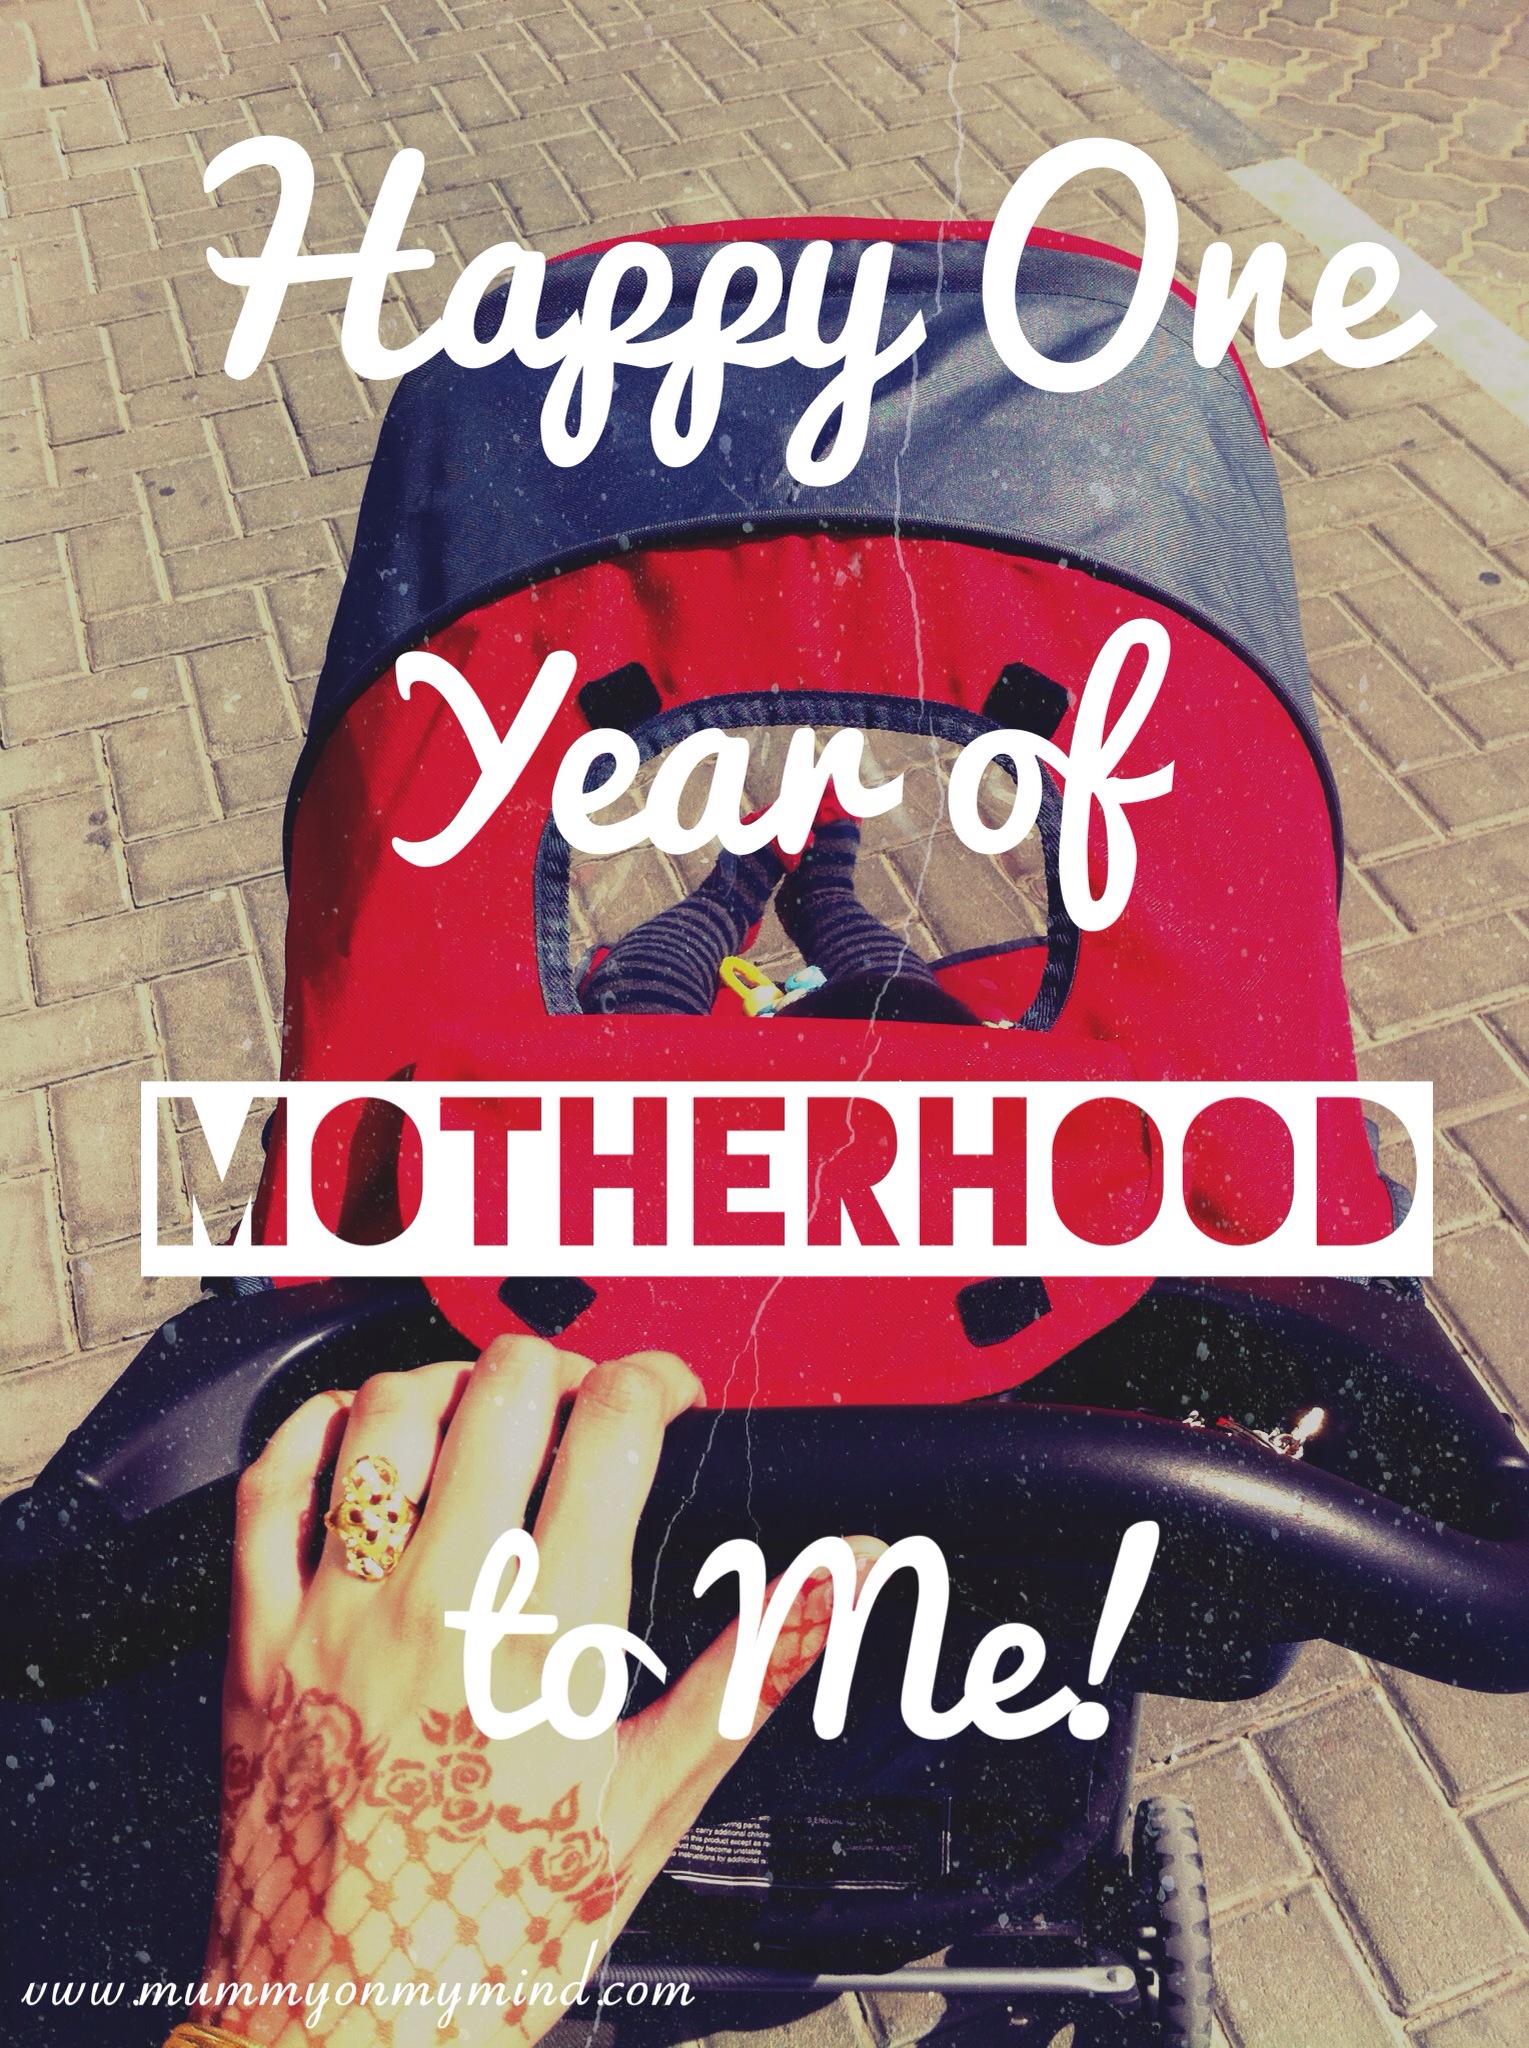 Happy One Year of Motherhood to Me!